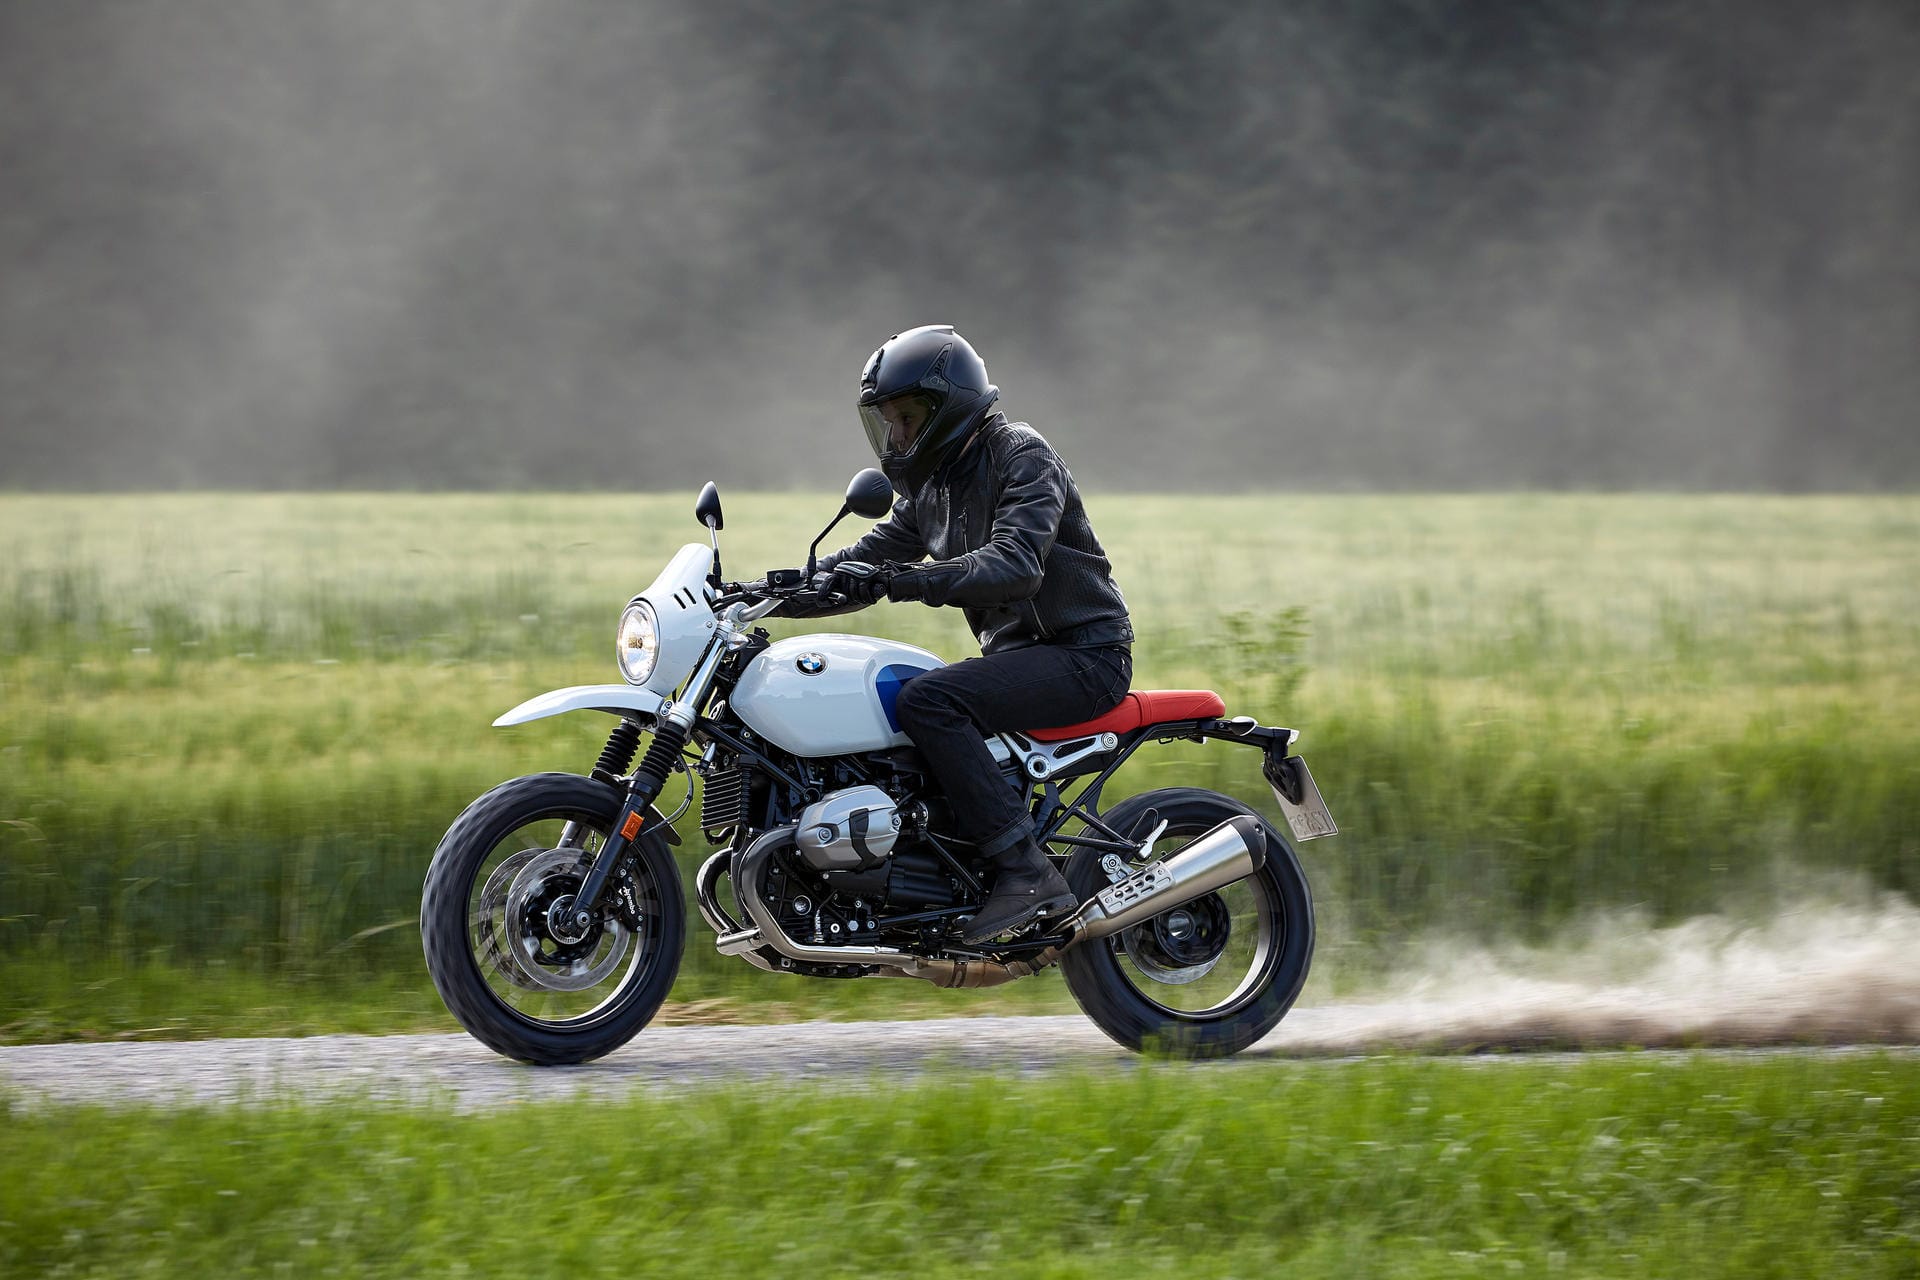 Motorrad im Custom-Stil: Für die R-nineT-Reihe bietet BMW ein großes Zubehörprogramm an.